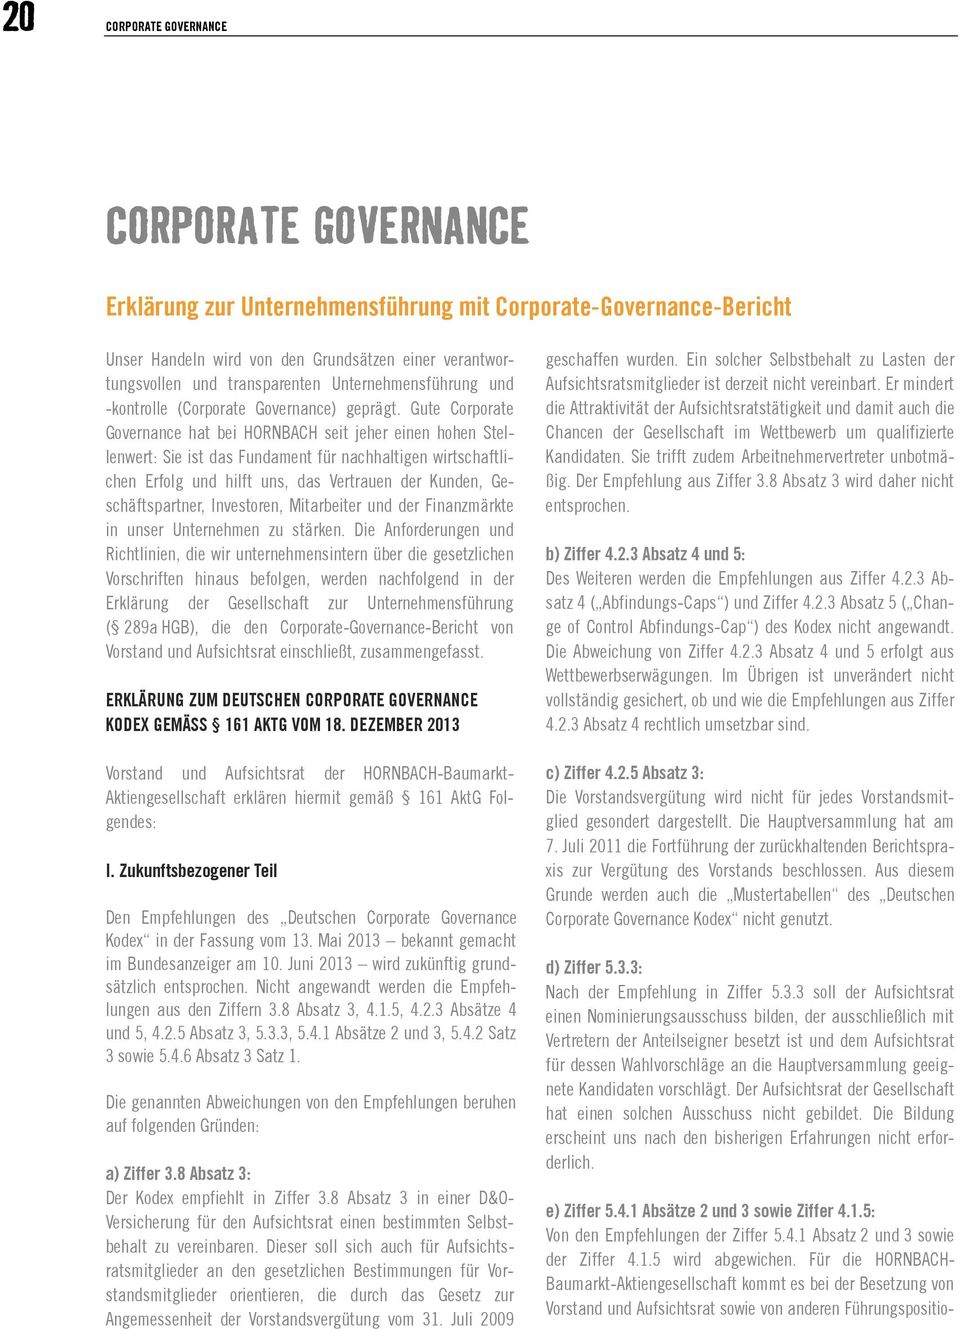 Gute Corporate Governance hat bei HORNBACH seit jeher einen hohen Stellenwert: Sie ist das Fundament für nachhaltigen wirtschaftlichen Erfolg und hilft uns, das Vertrauen der Kunden,